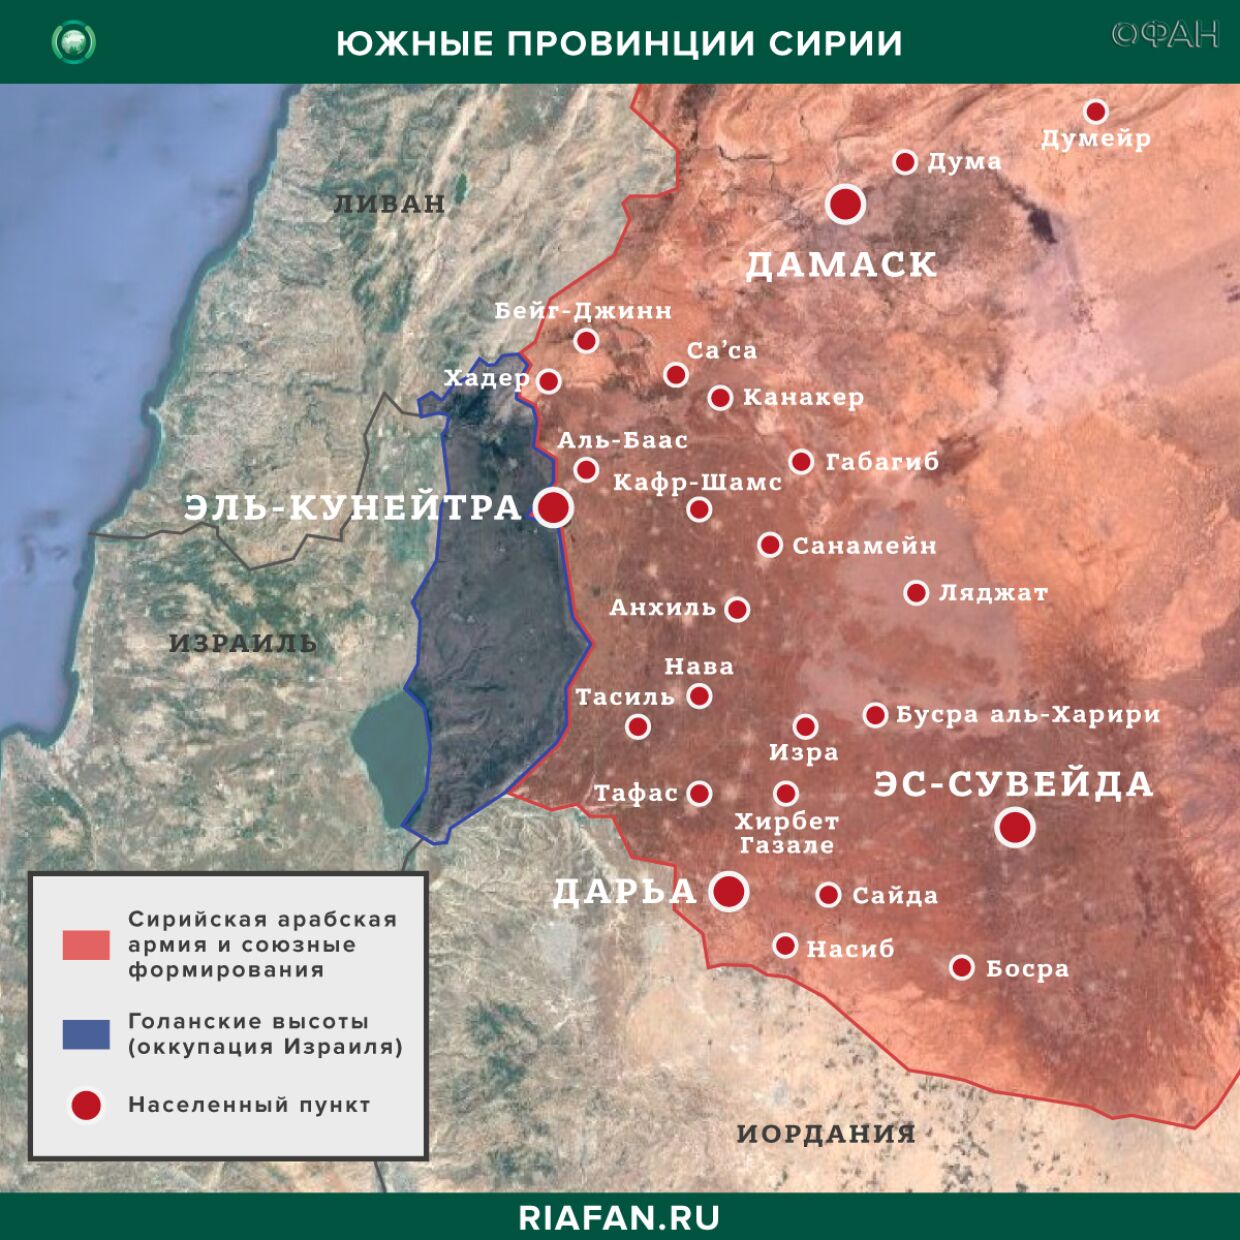 叙利亚新闻 31 七月 22.30: 土耳其的盟友炮击了哈萨卡的一个村庄, HTS 袭击了伊德利卜的 SAA